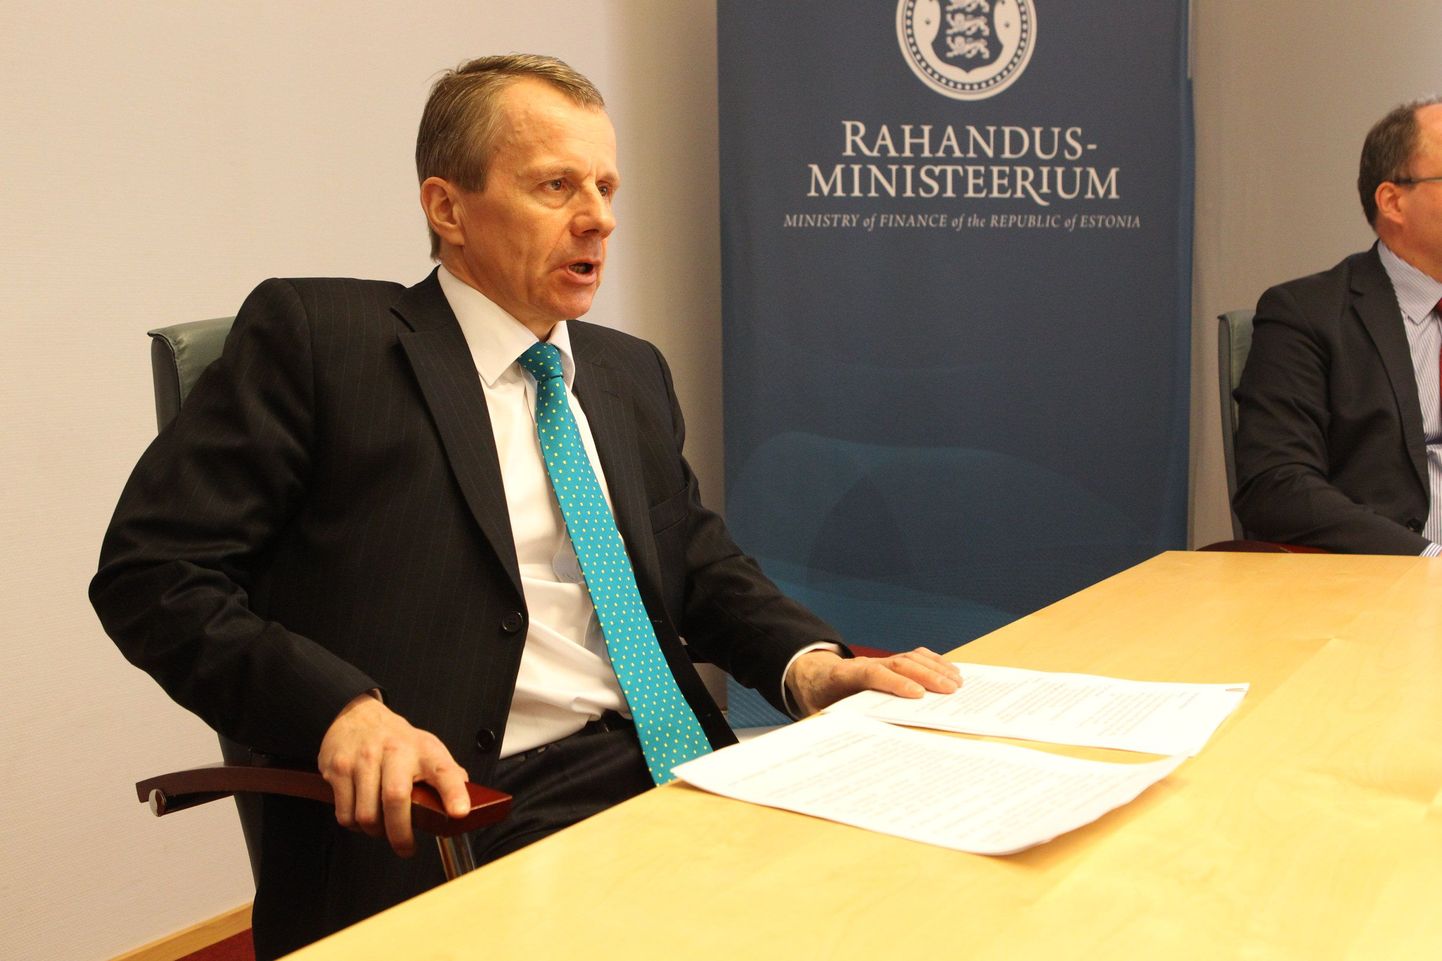 Rahandusminister Jürgen Ligi. Eesti jääb proportsionaalsele tulumaksule kindlaks.